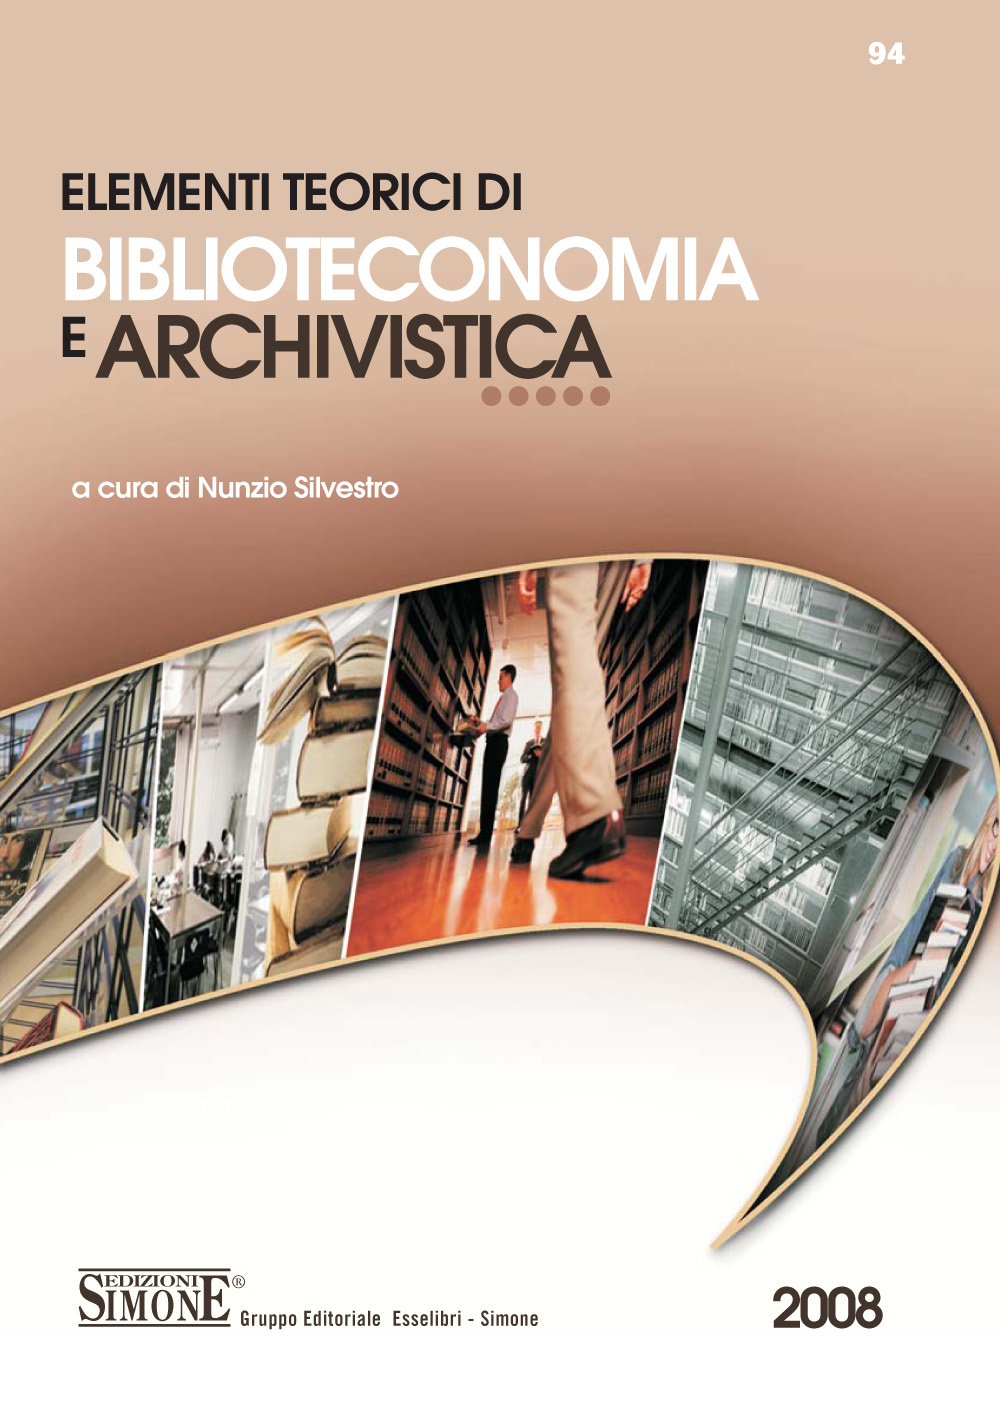 [Ebook] Elementi teorici di Biblioteconomia e Archivistica